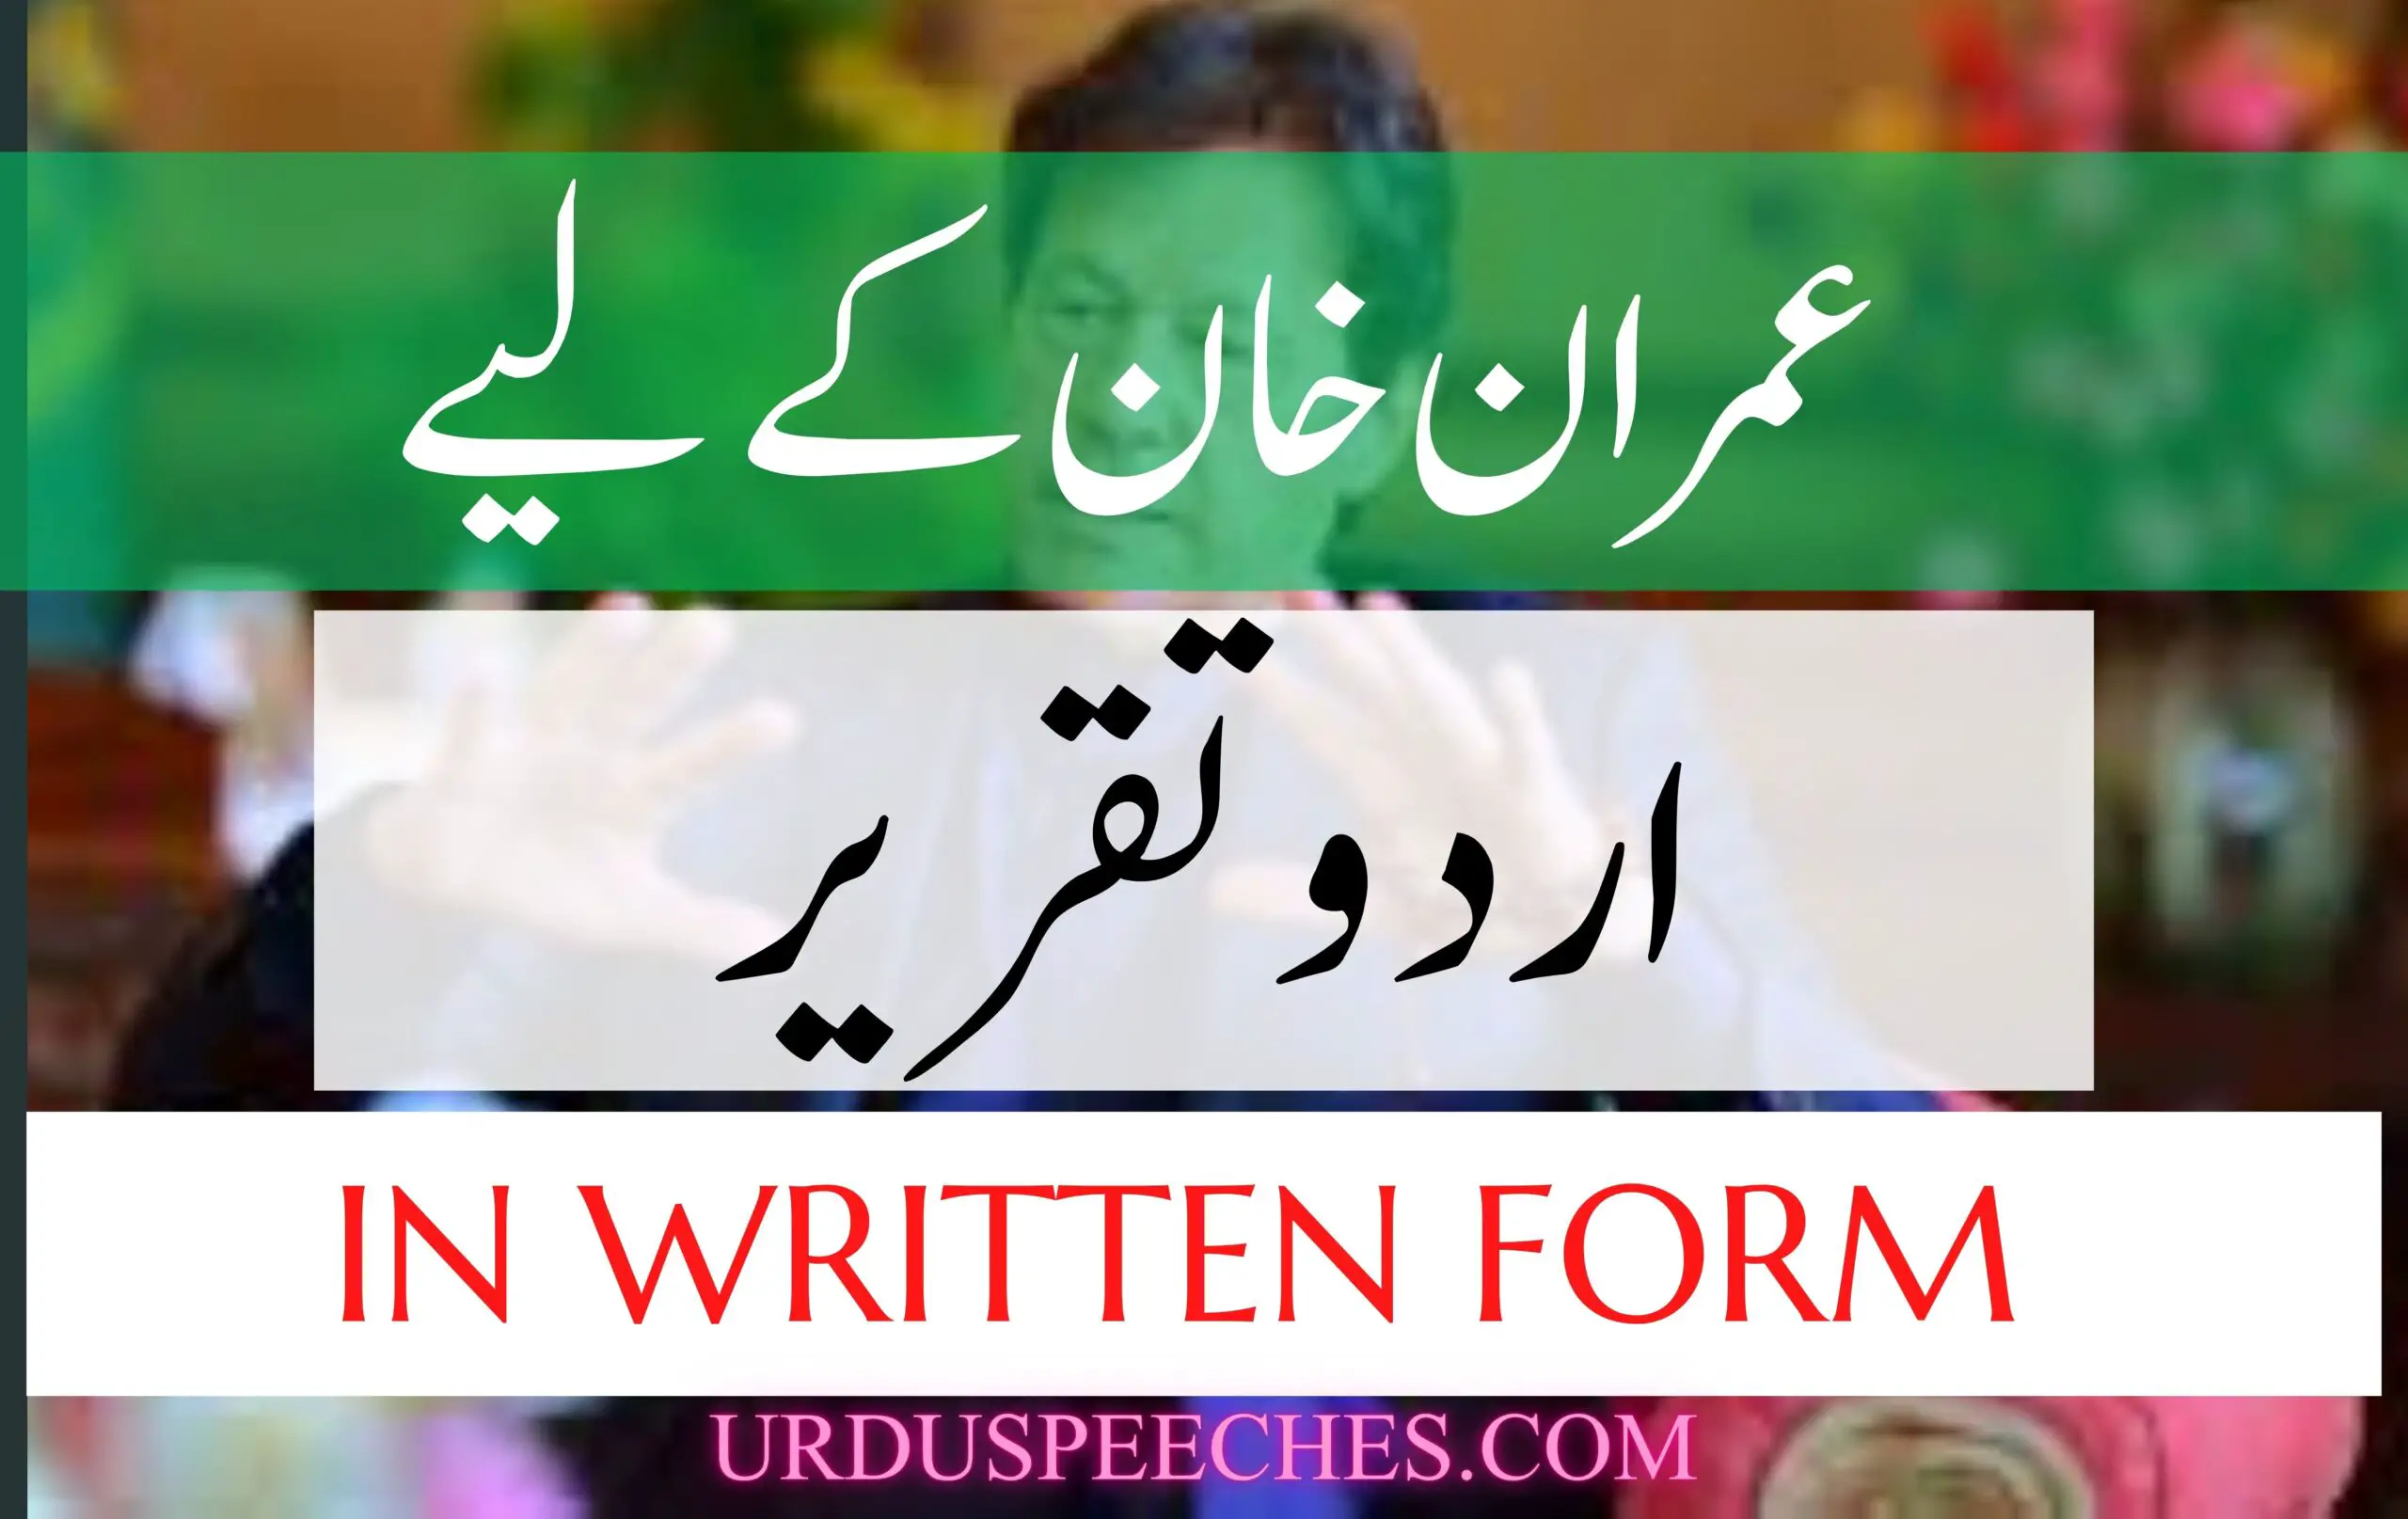 Urdu Speech on Imran Khan in Written Form